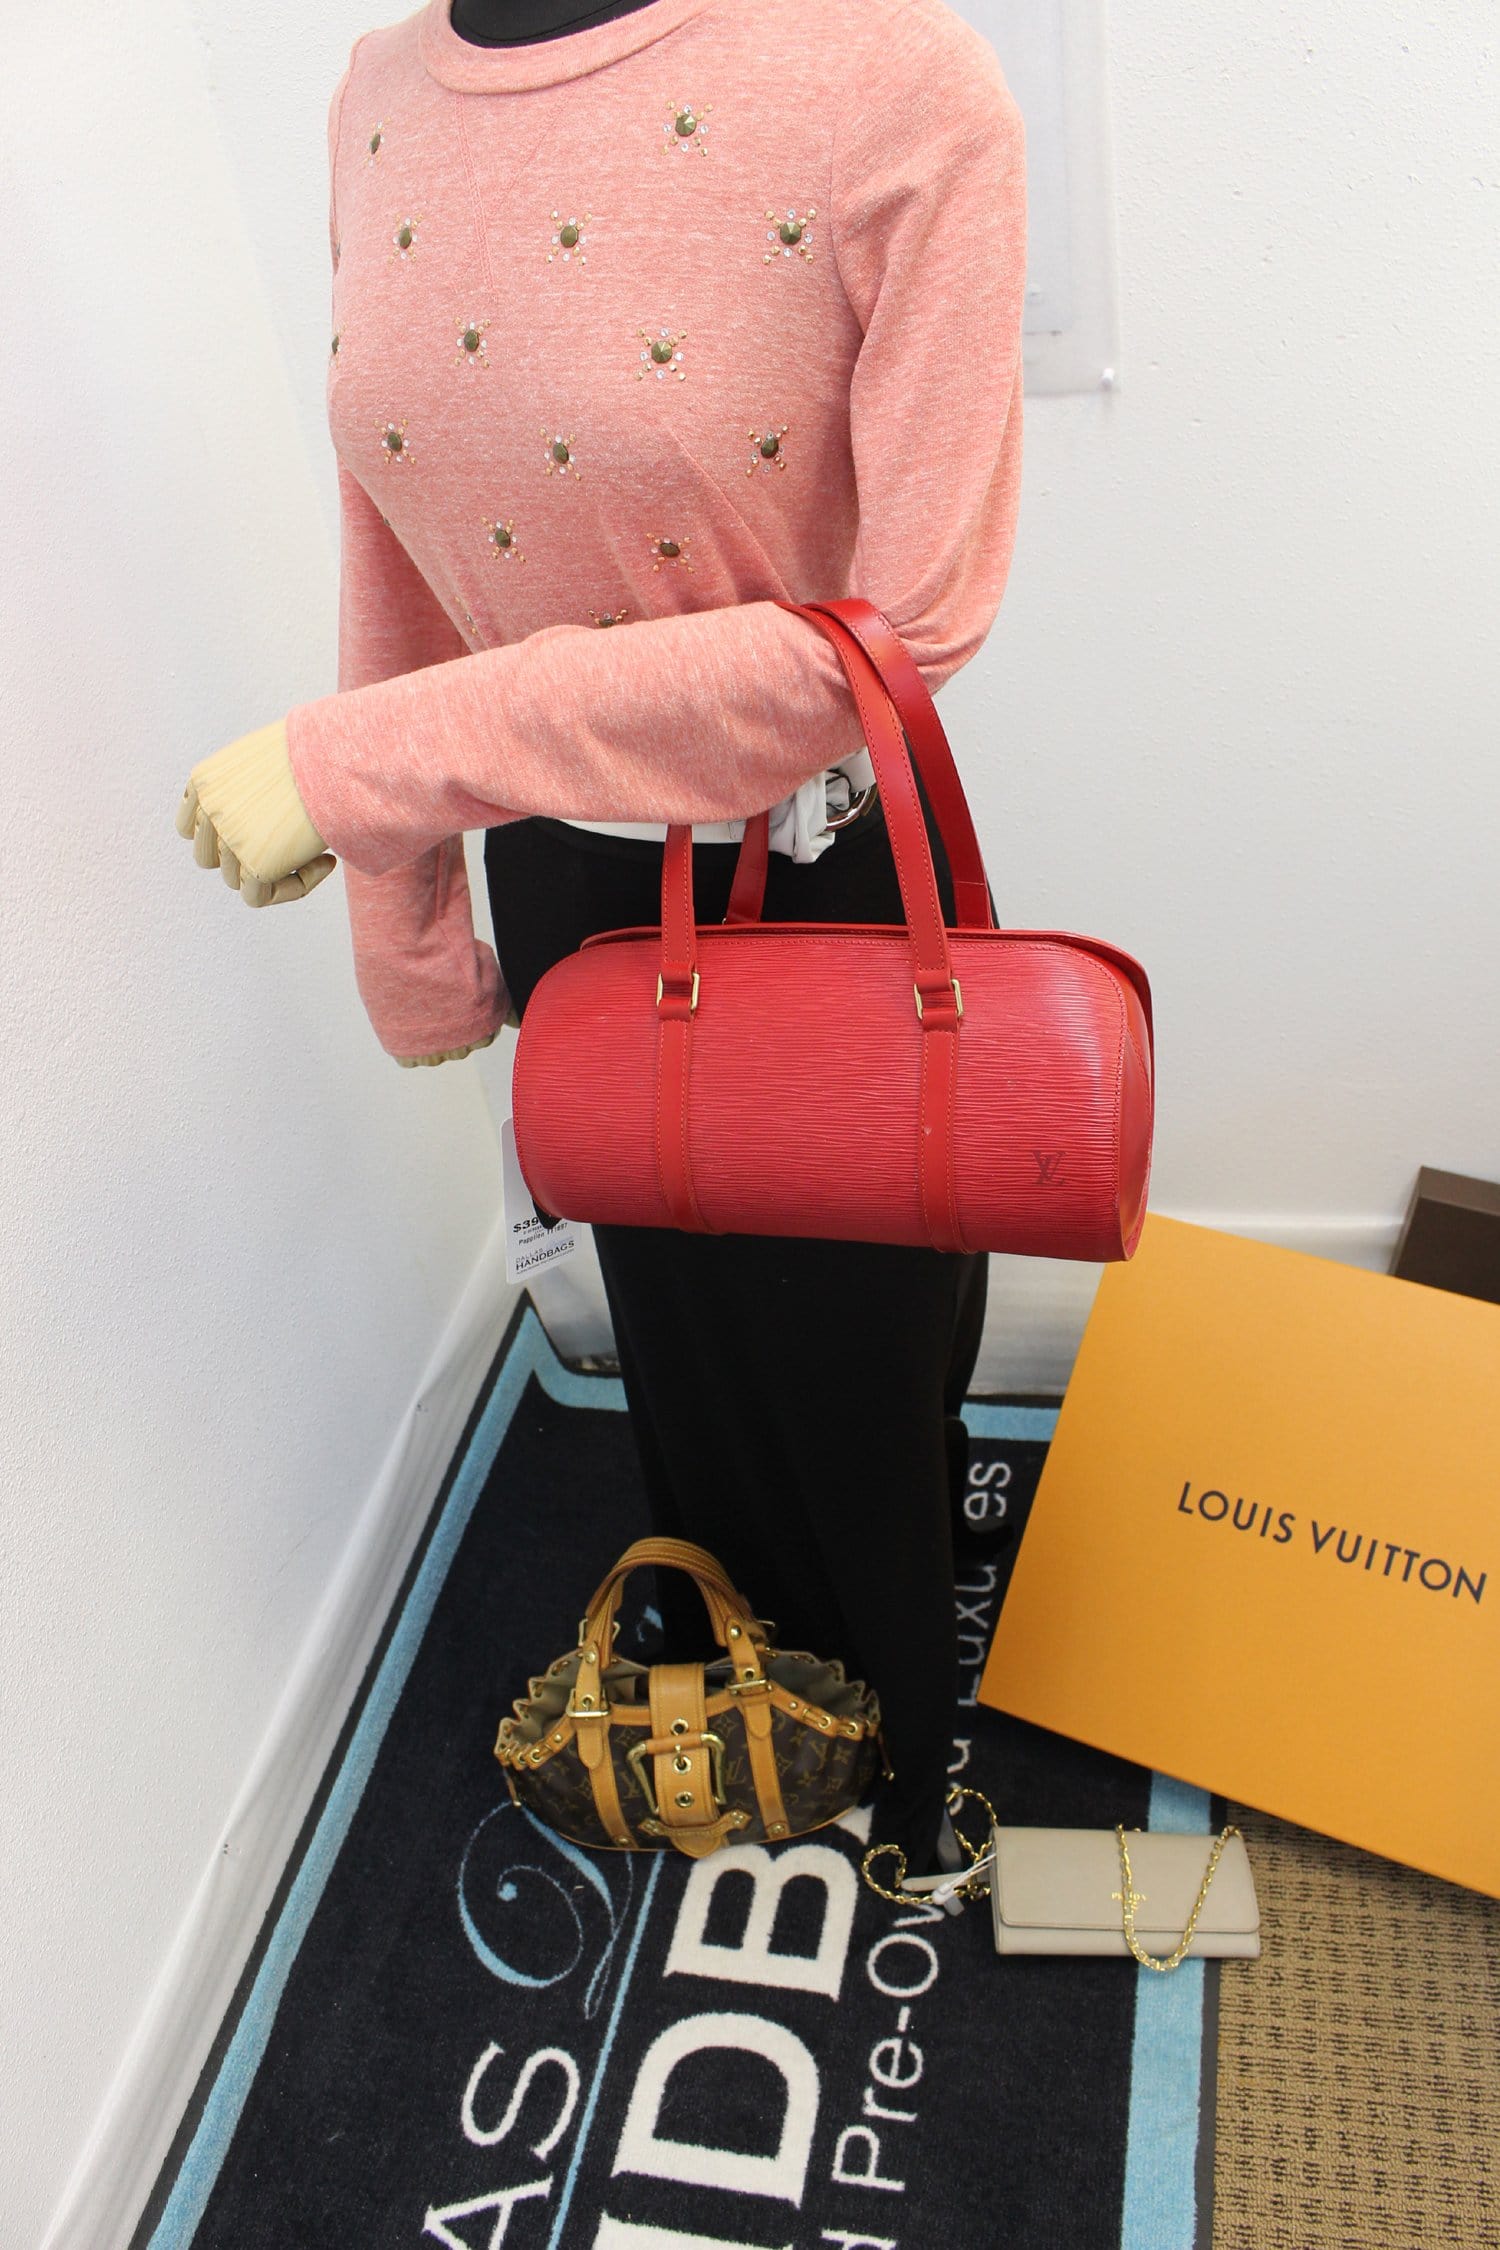 Louis Vuitton Soufflot Epi Leather Red Bag